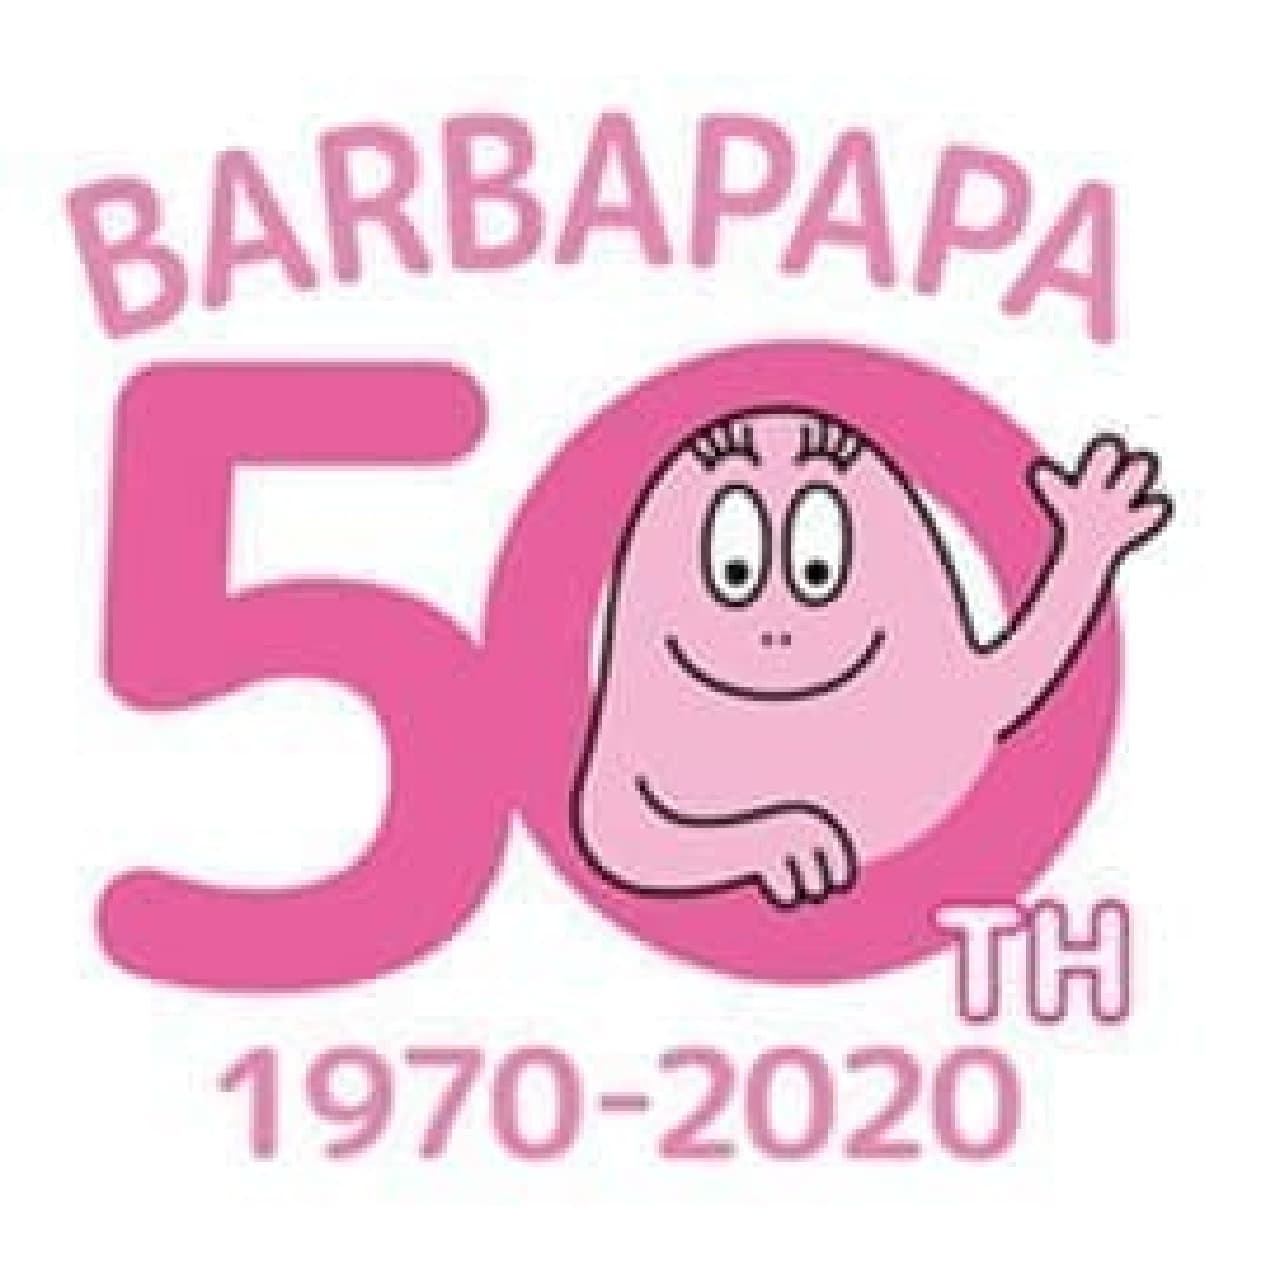 「バーバパパのお正月飾り」PLAZAウェブサイトに -- パーティピックやガーランド